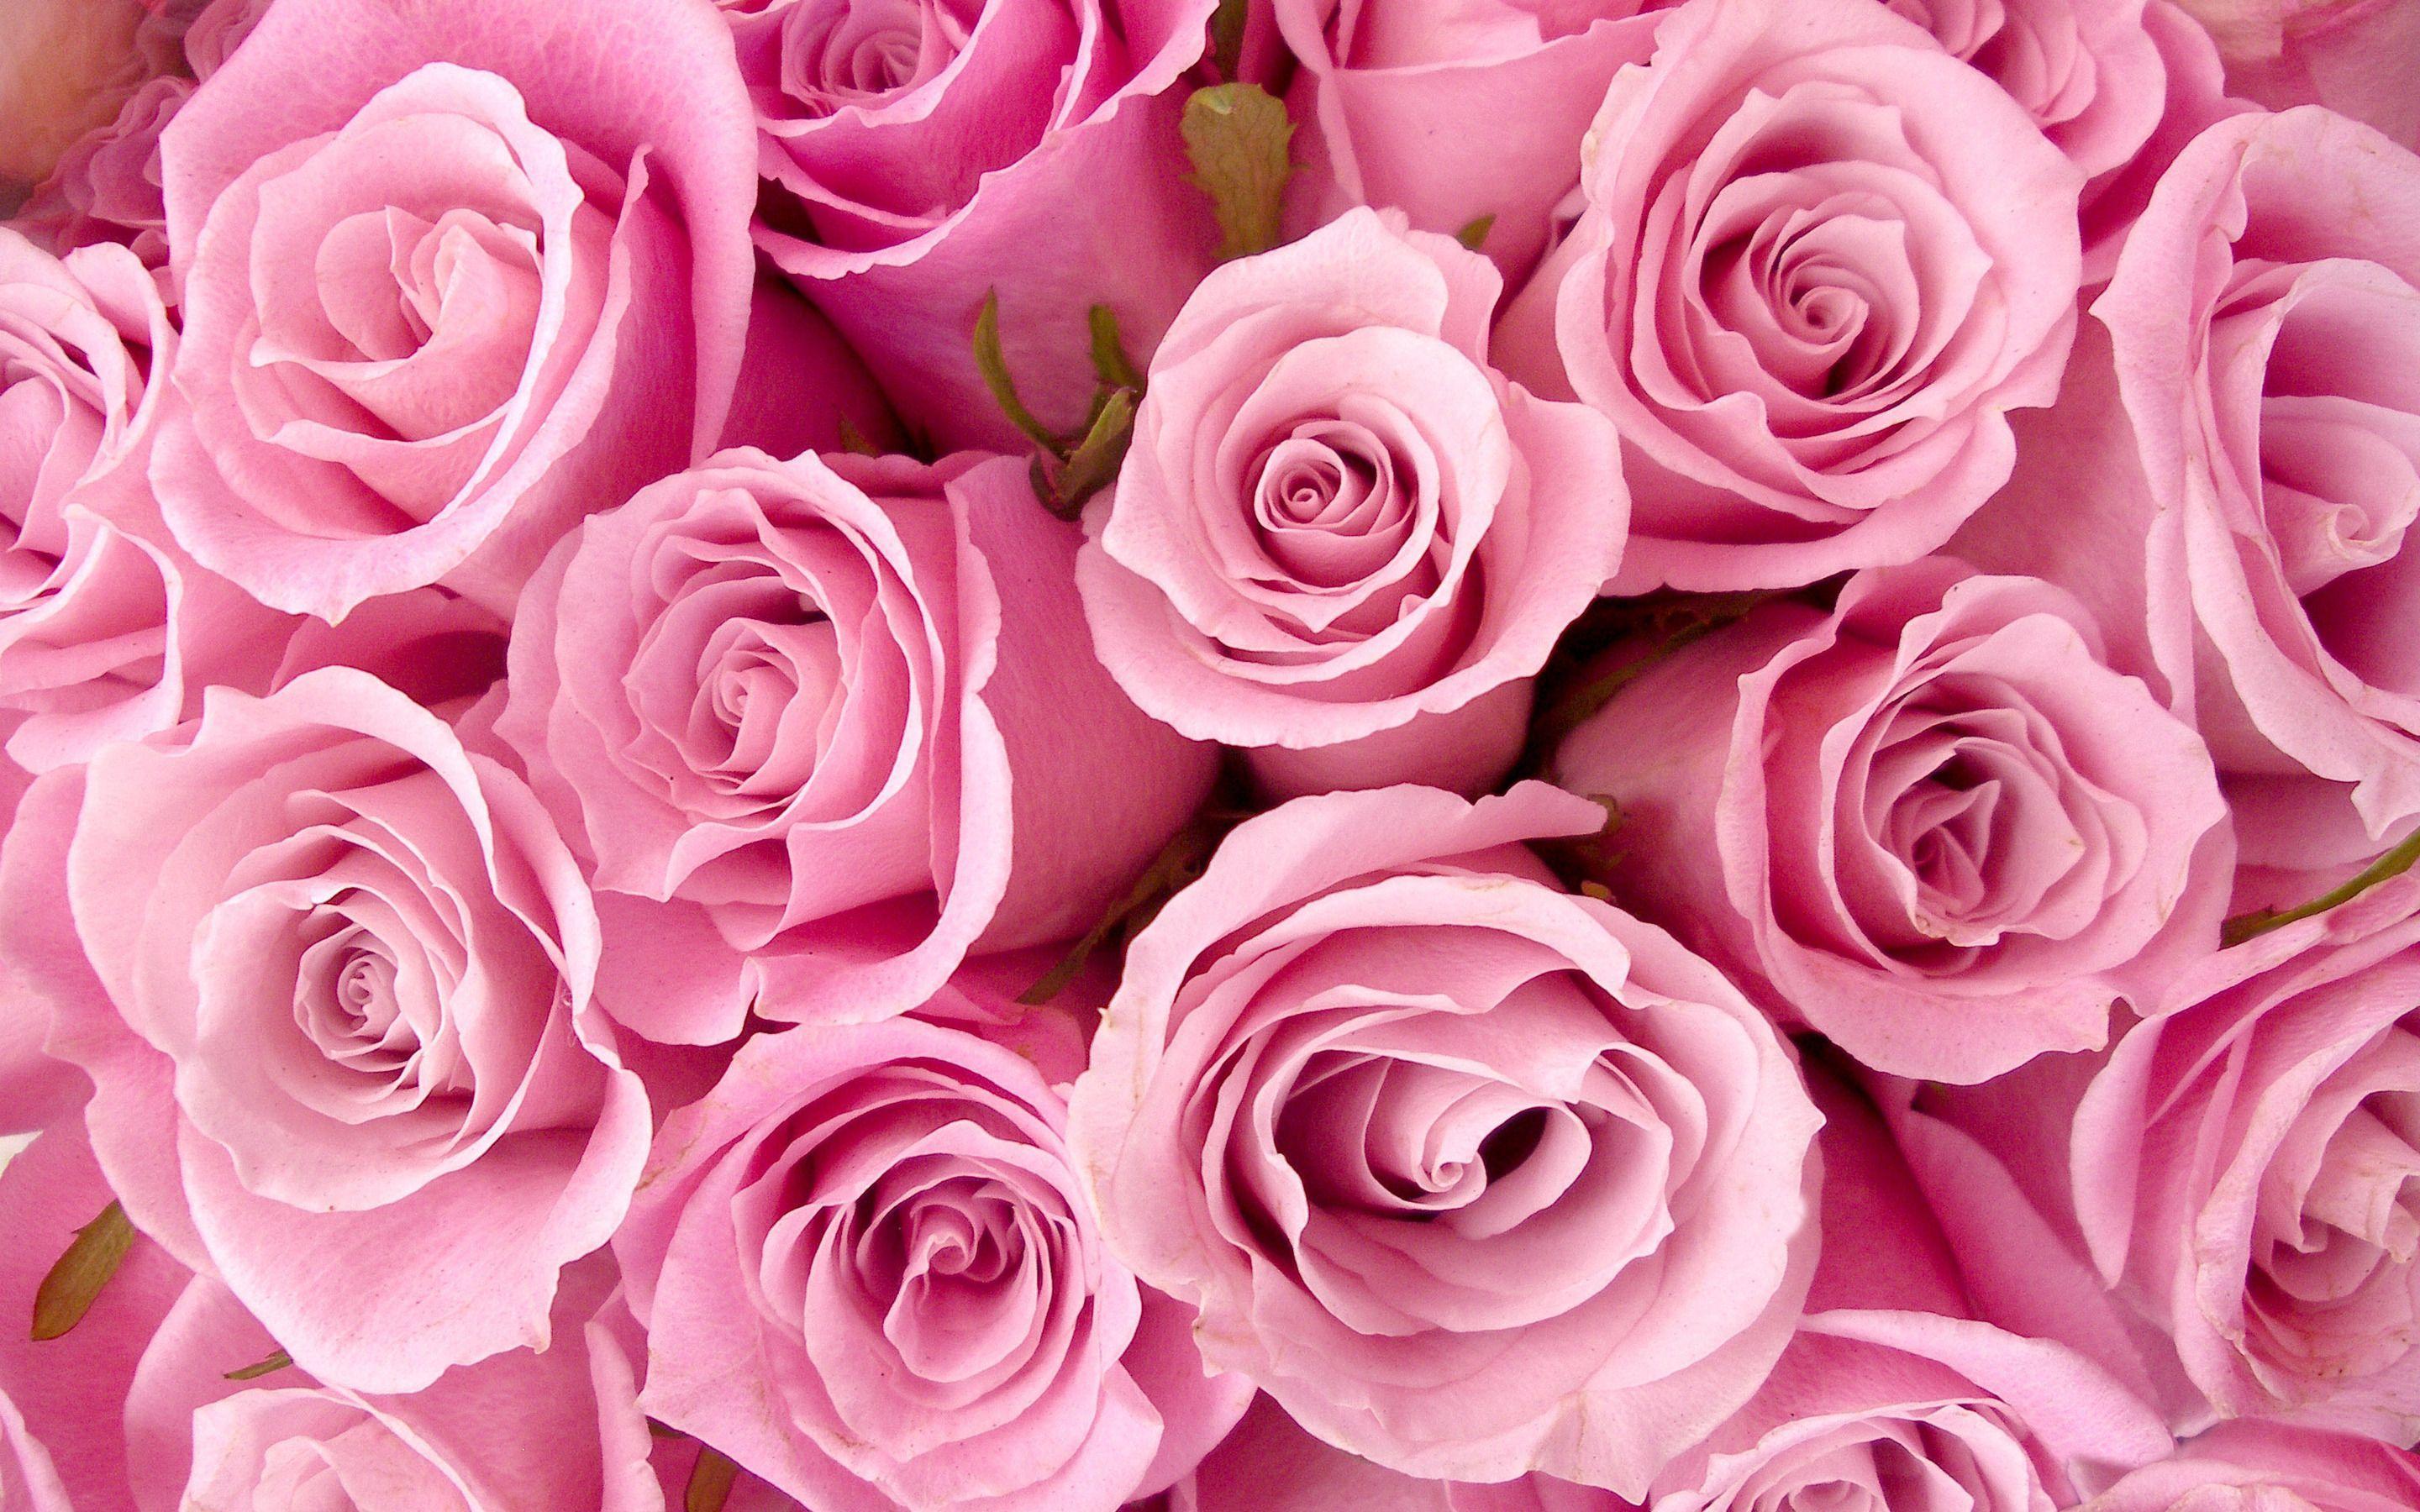 Hình nền hoa hồng nhạt màu hồng sẽ mang đến cho bạn một cảm giác ngọt ngào và dịu dàng như những bông hoa hồng đang nở rộ trong sân vườn. Với sắc màu nhạt nhẹ, hình nền này sẽ khiến cho bạn cảm thấy thư thái và yên bình. Hãy chiêm ngưỡng hình nền này để tận hưởng những giây phút thật sự thư giãn.